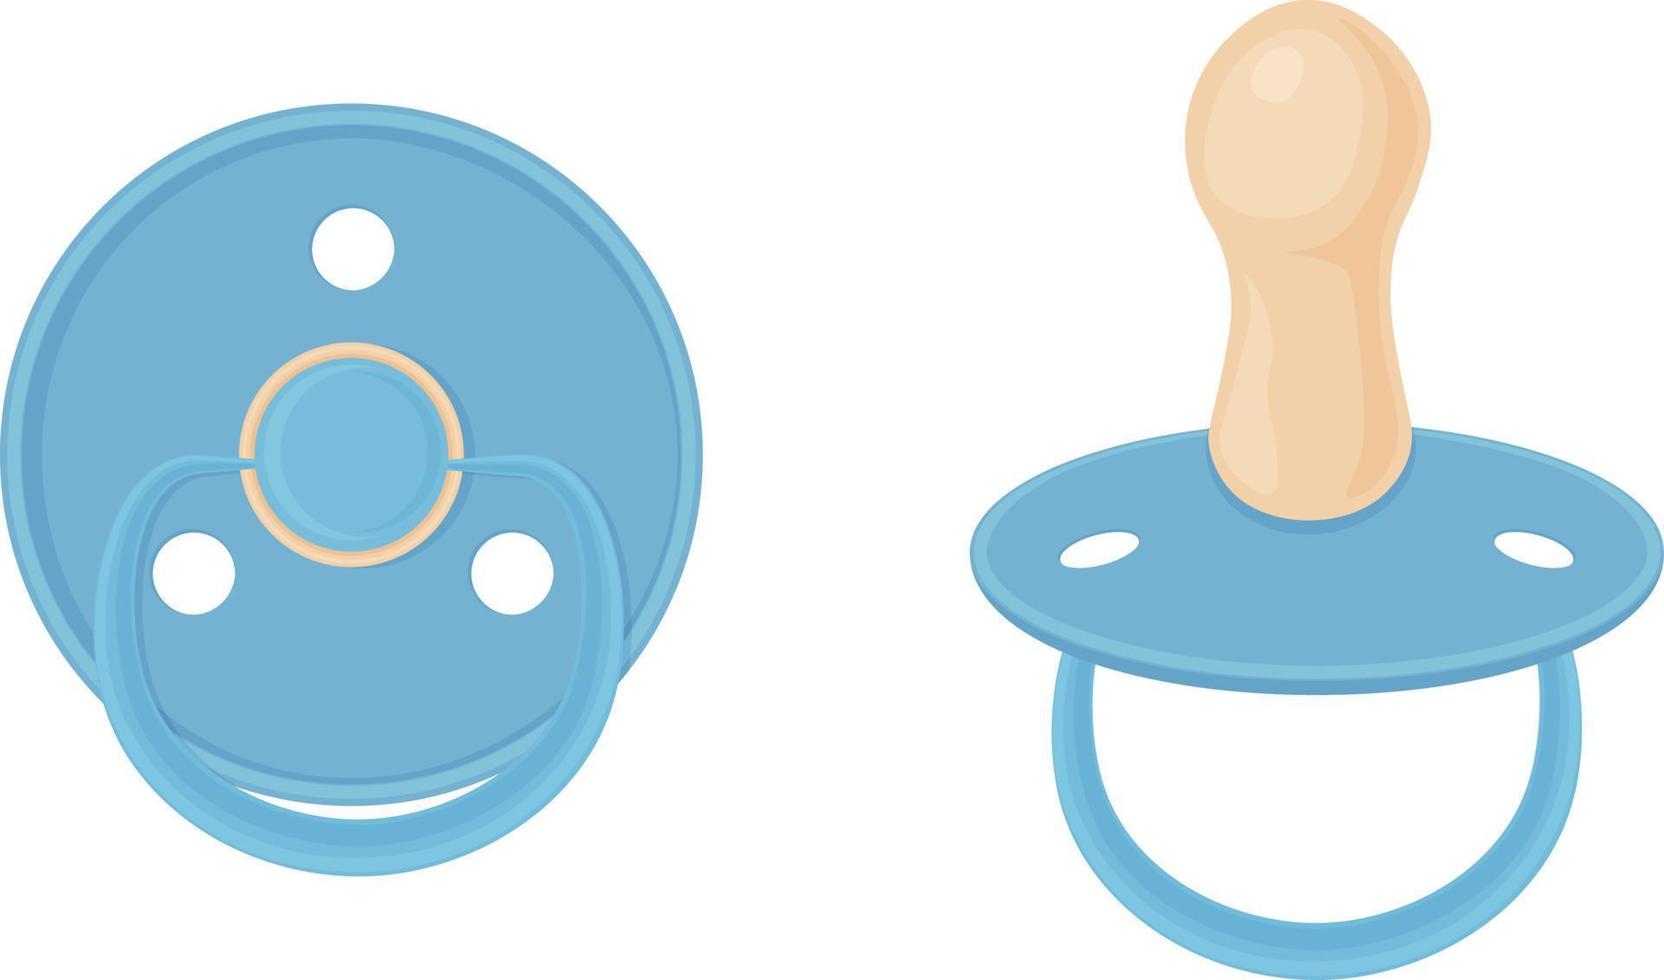 Tetinas para chupete de bebé, azul. pezones de bebé, vista lateral y vista inferior. ilustración vectorial aislada en un fondo blanco vector